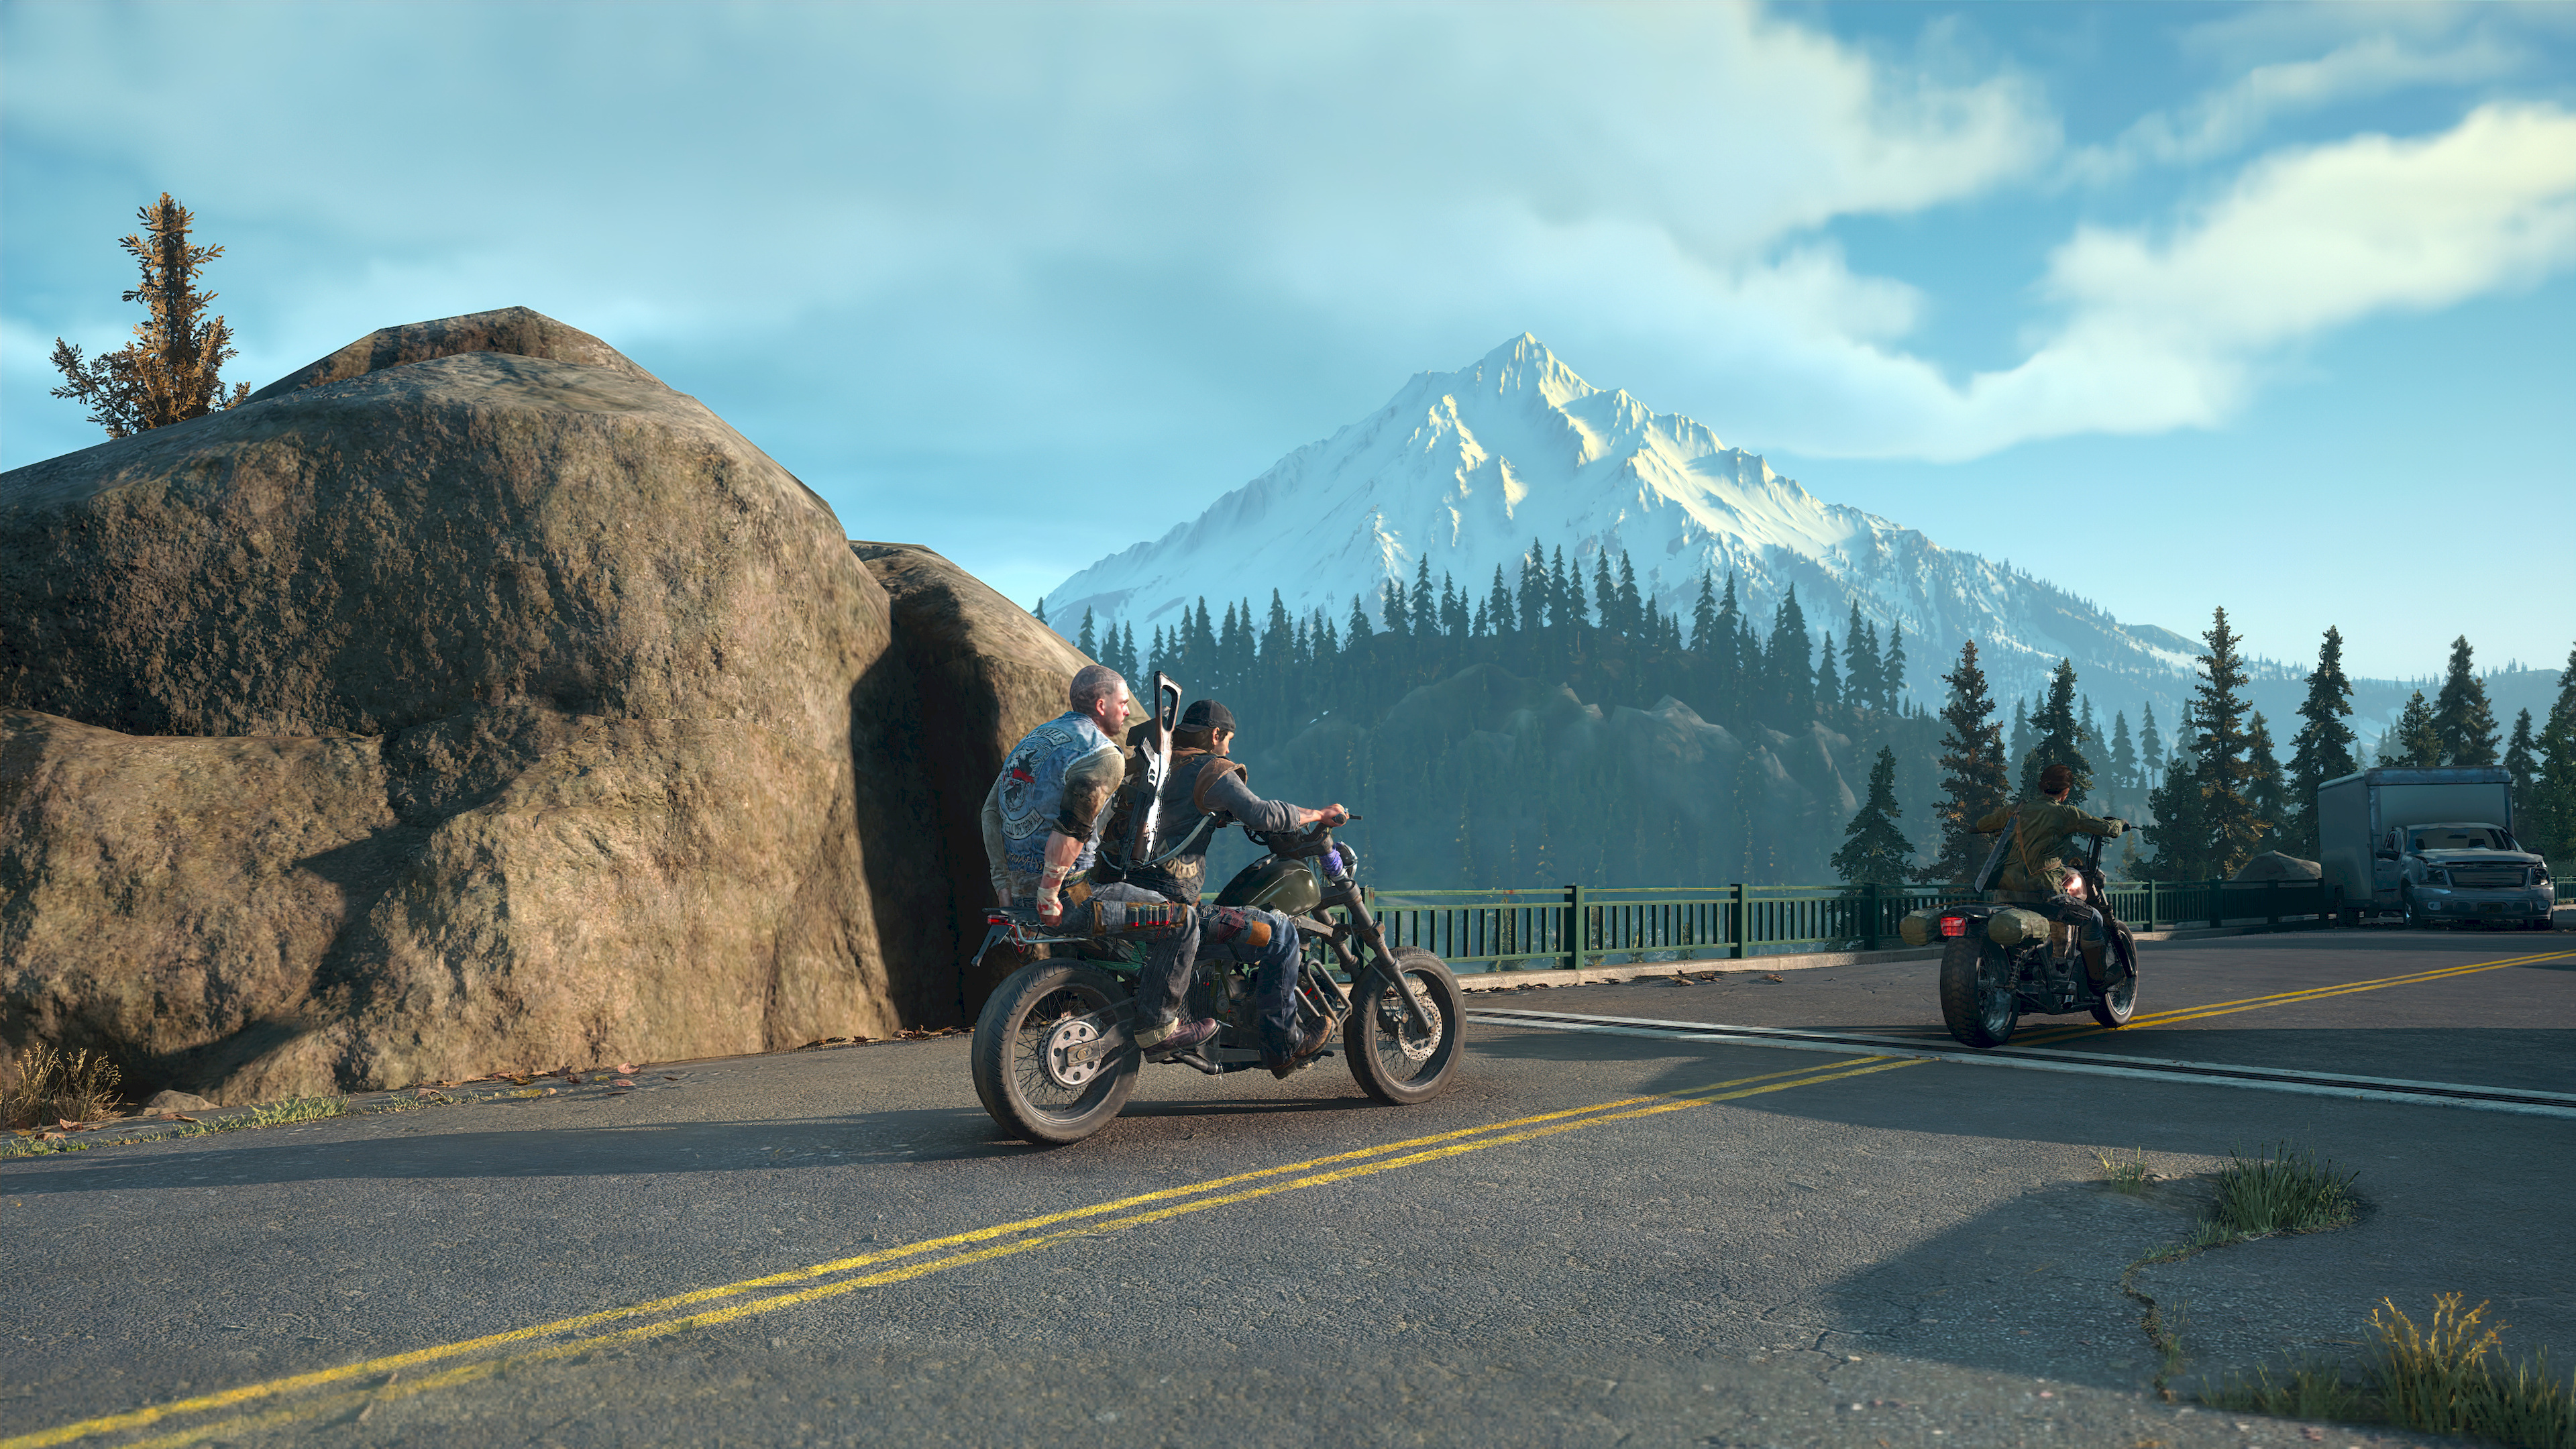 Путешествие на мотоциклах по живописным краям, Красивая гора, Байкерское путешествие